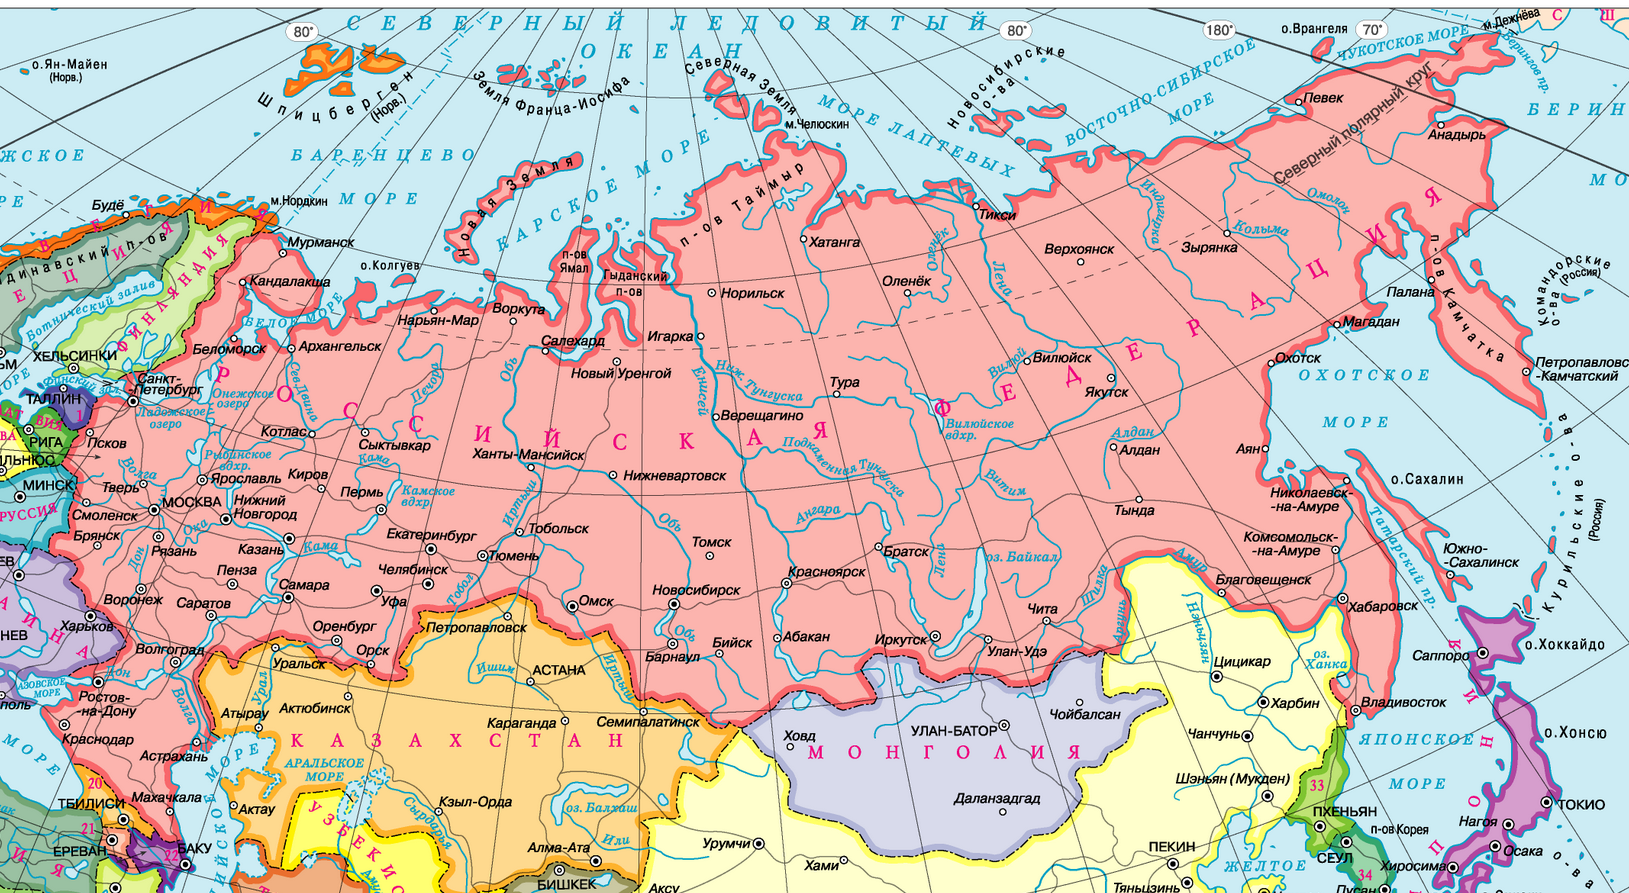 Карта россии с регионами и городами в хорошем качестве на русском языке бесплатно без регистрации